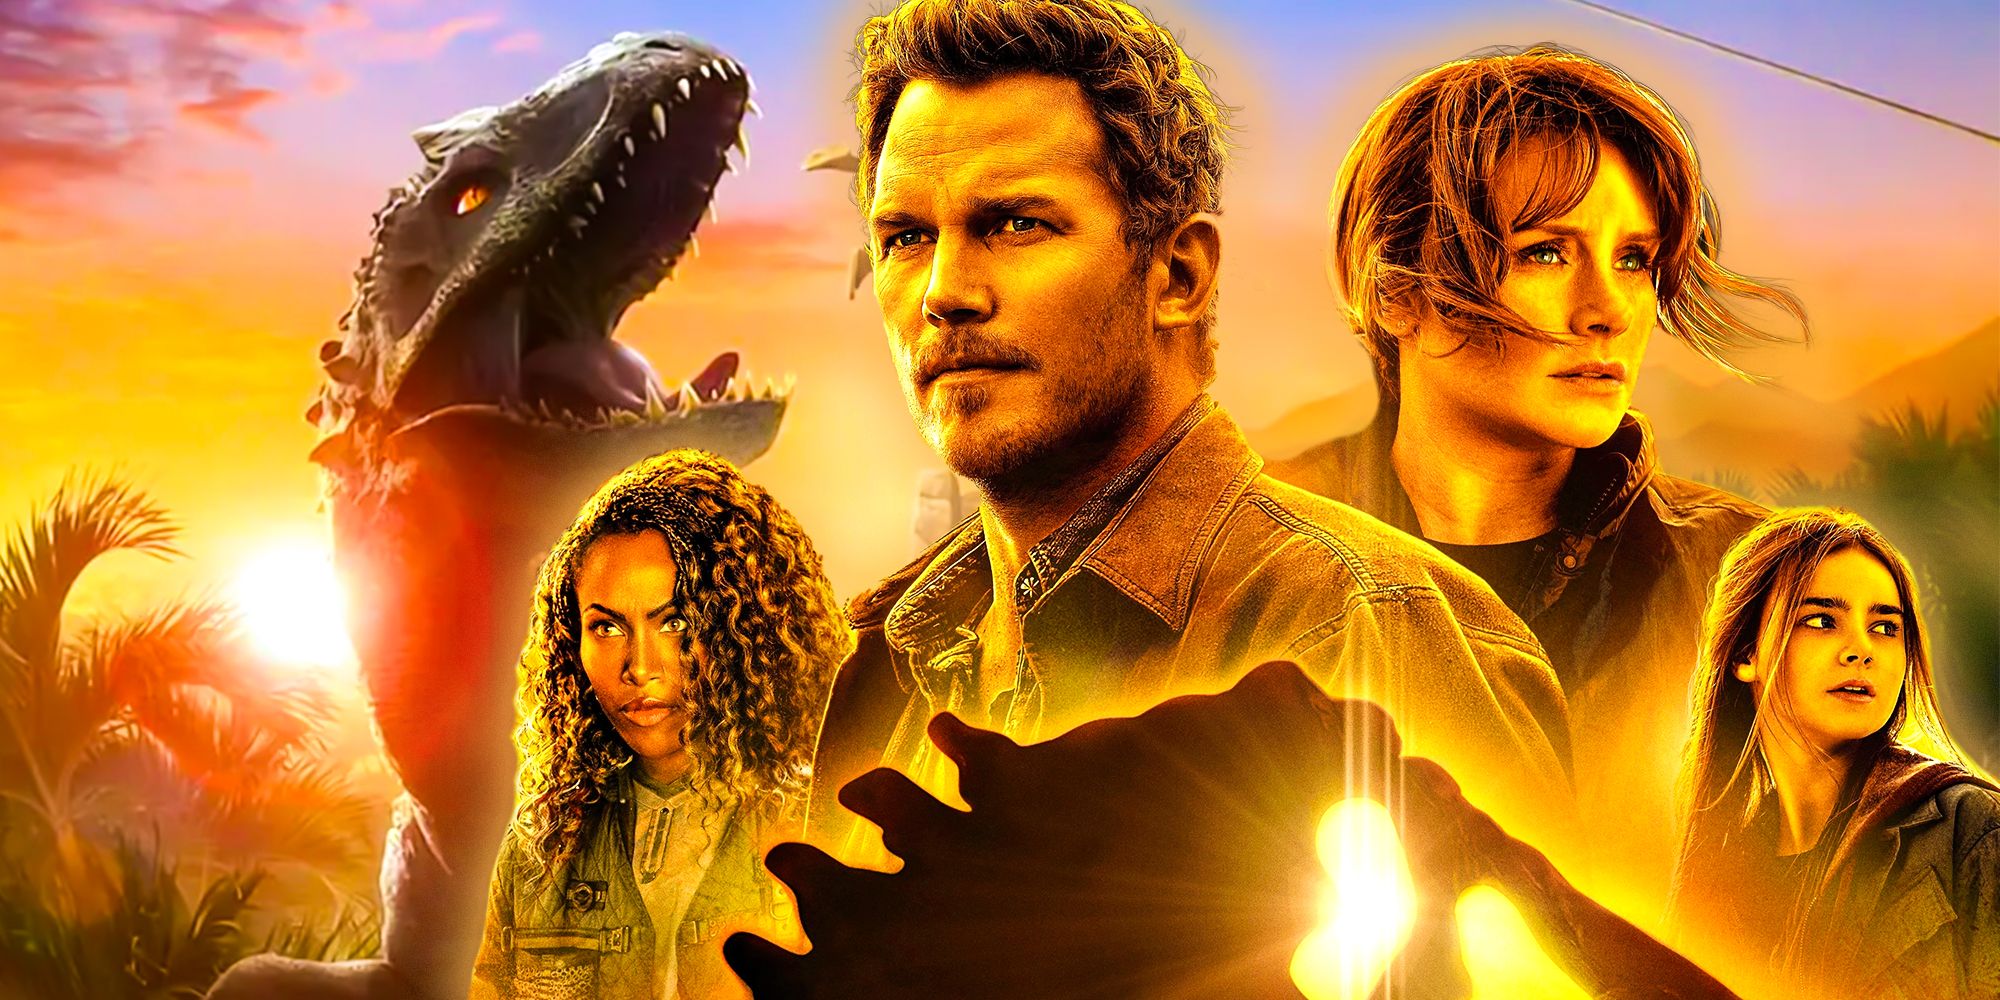 Um dinossauro de Jurassic World: Chaos Theory com o elenco de Jurassic World: Dominion no pôster do filme